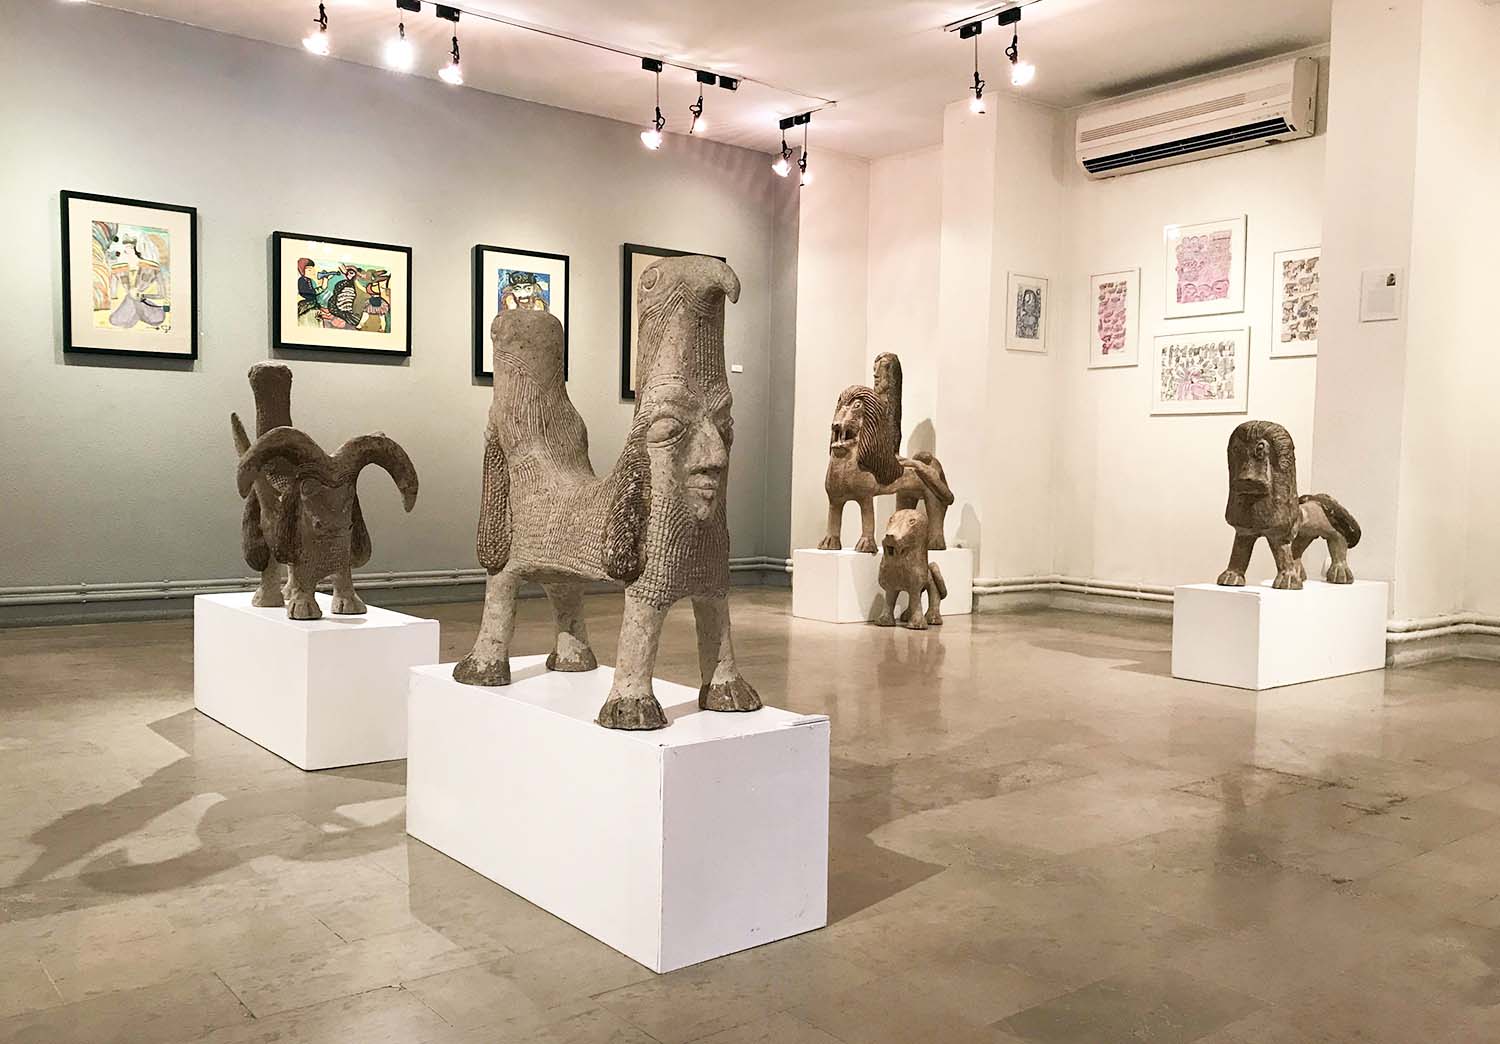 نگاهی به چهارمین نمایشگاه آثار گروهی از هنرمندان خودآموخته در نگارخانه لاله